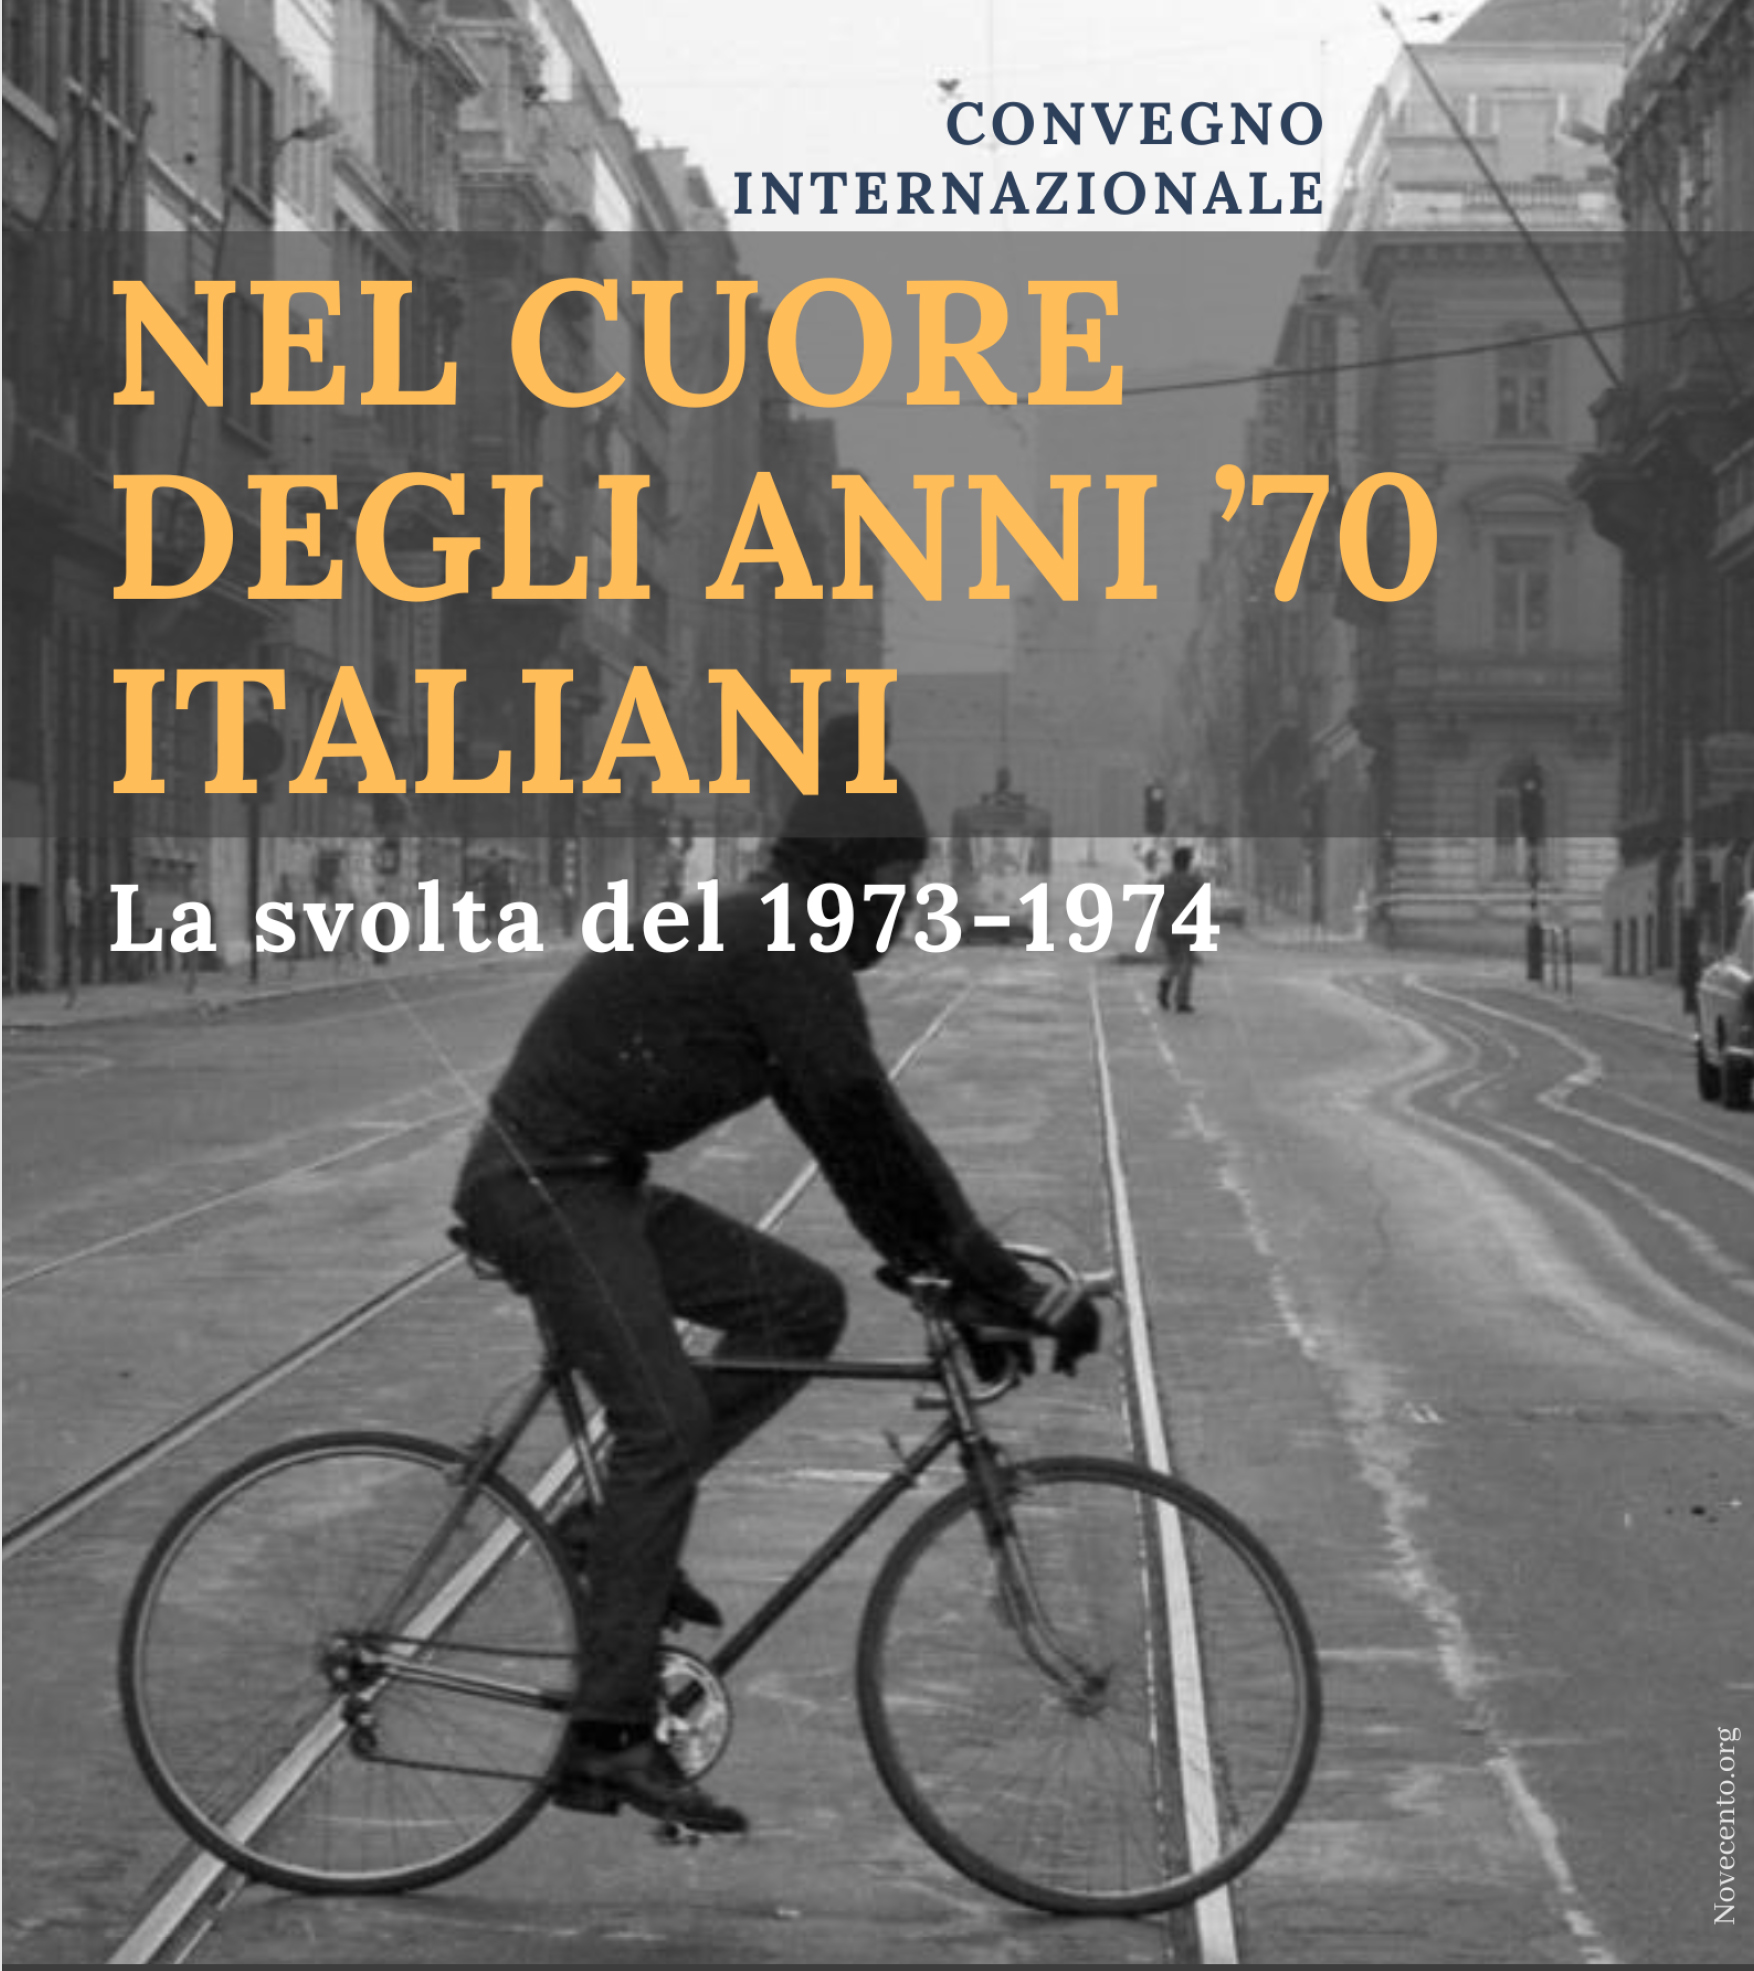 Affiche colloque anni 70 italiani